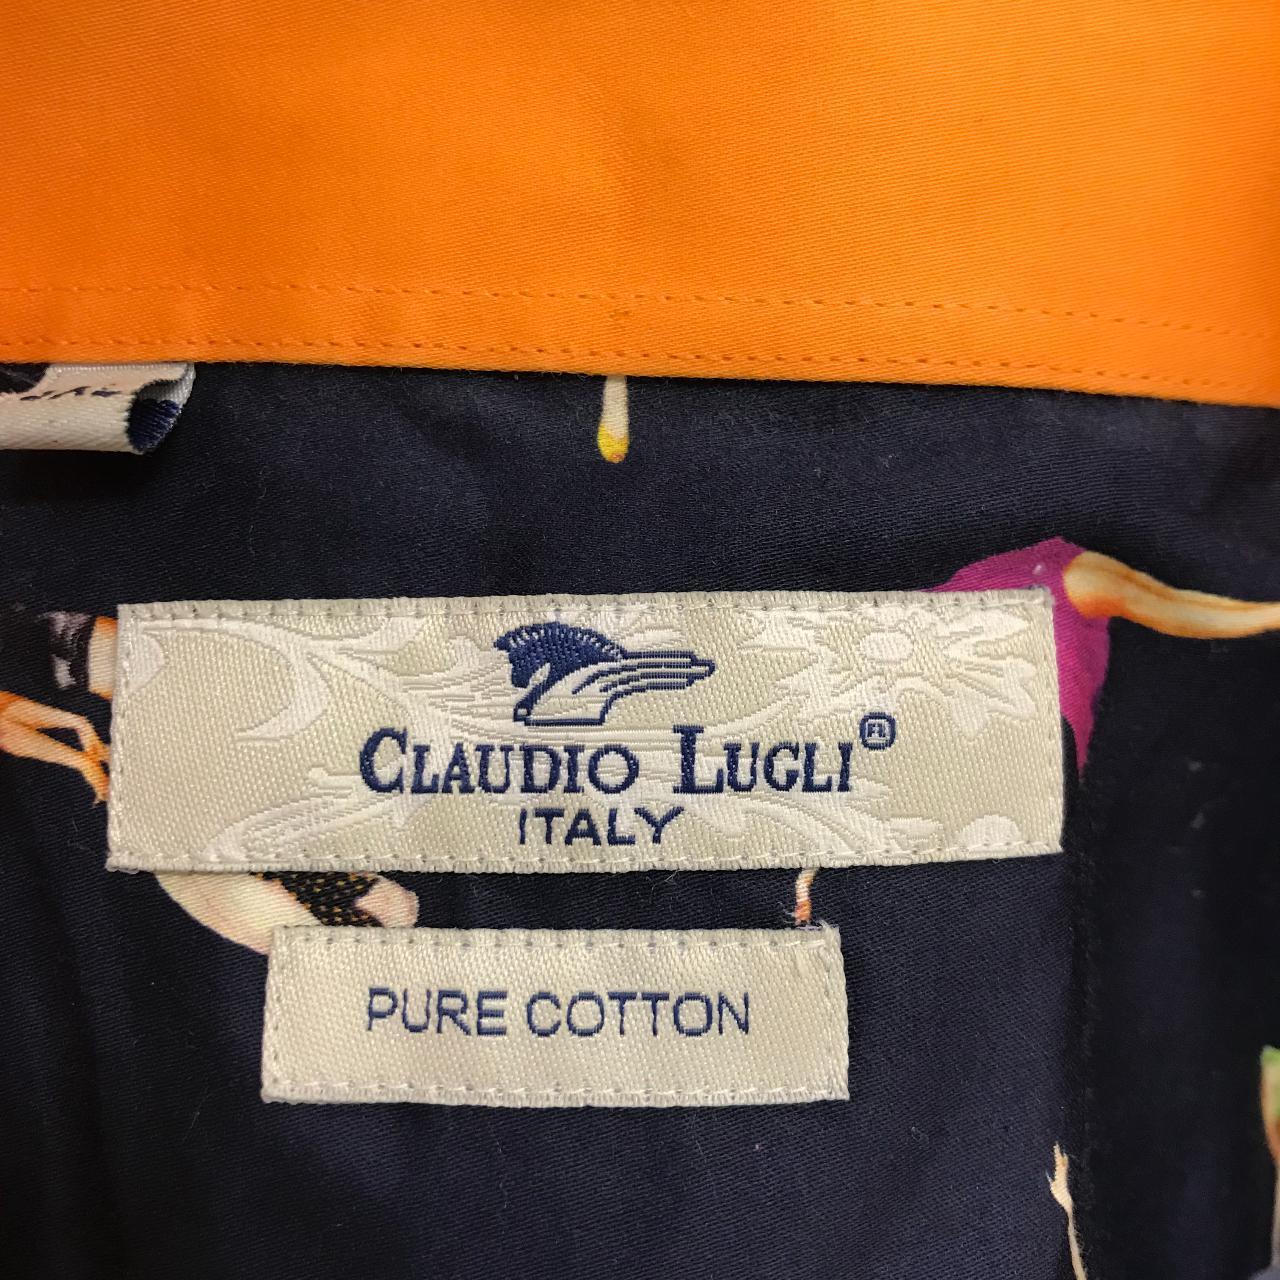 Product Image 4 - Claudio Lugli
100 % cotton 
All